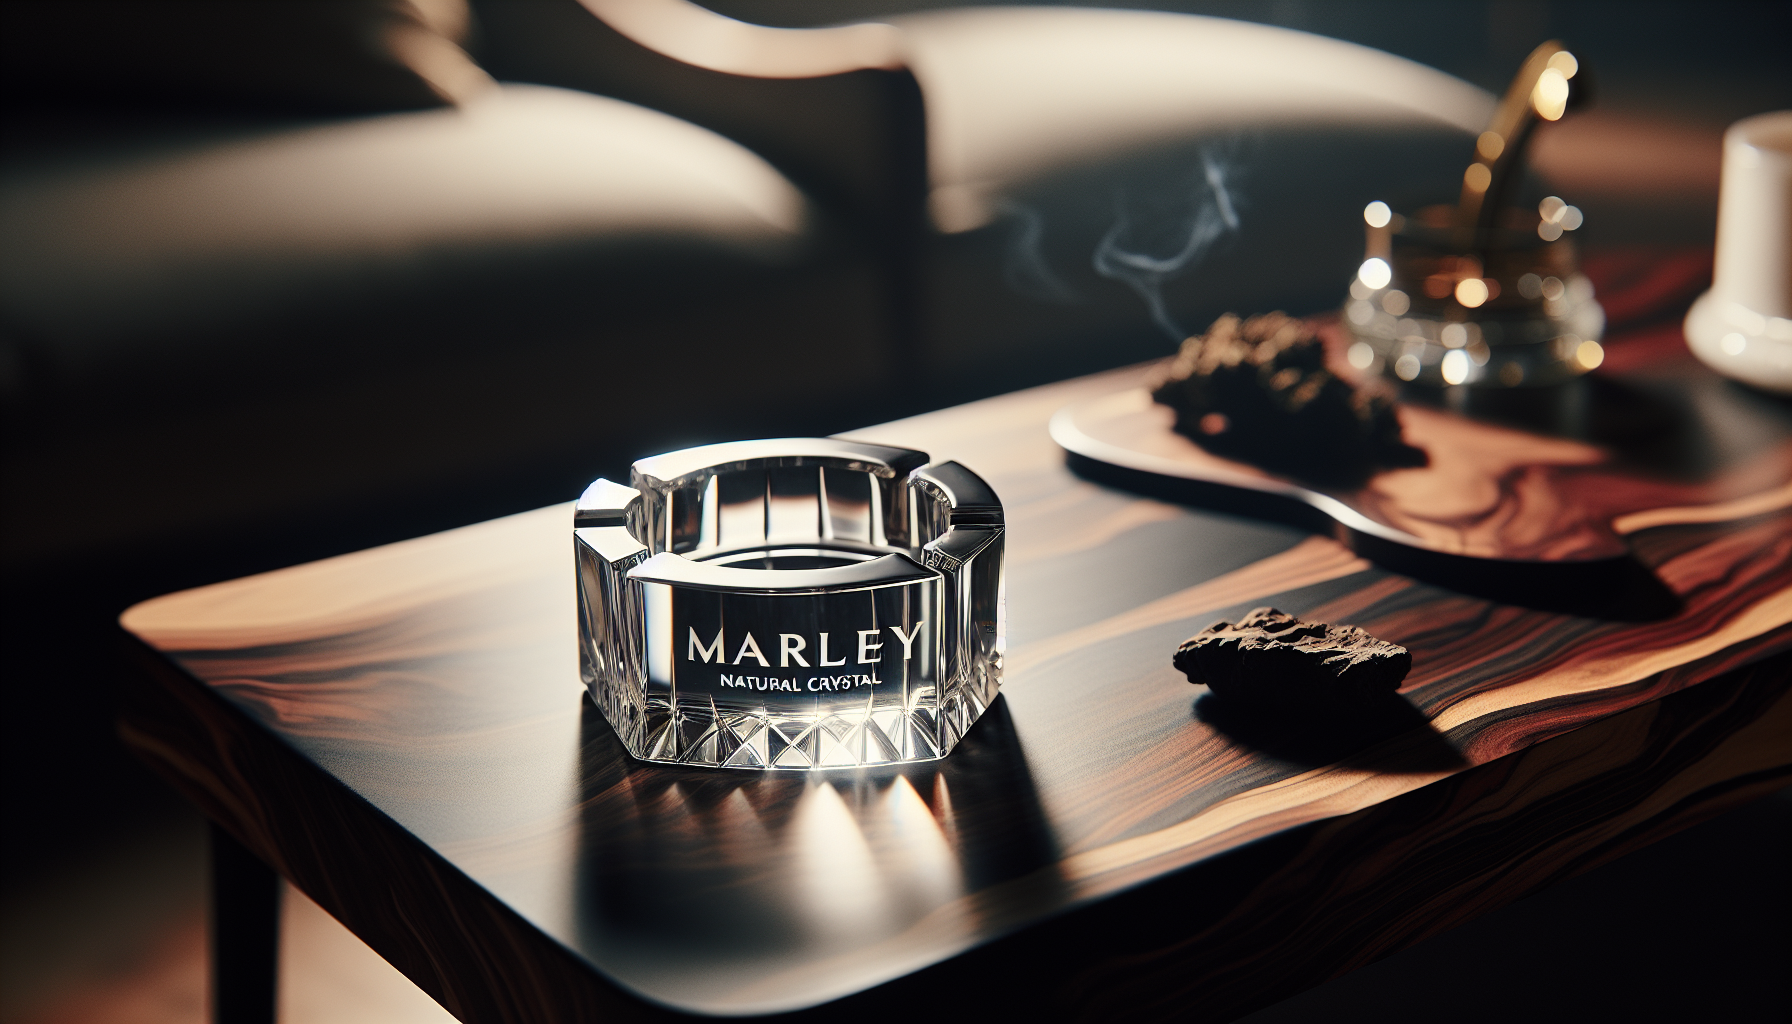 The Marley Natural Crystal Ash Tray, a beautiful and functional handmade ashtray